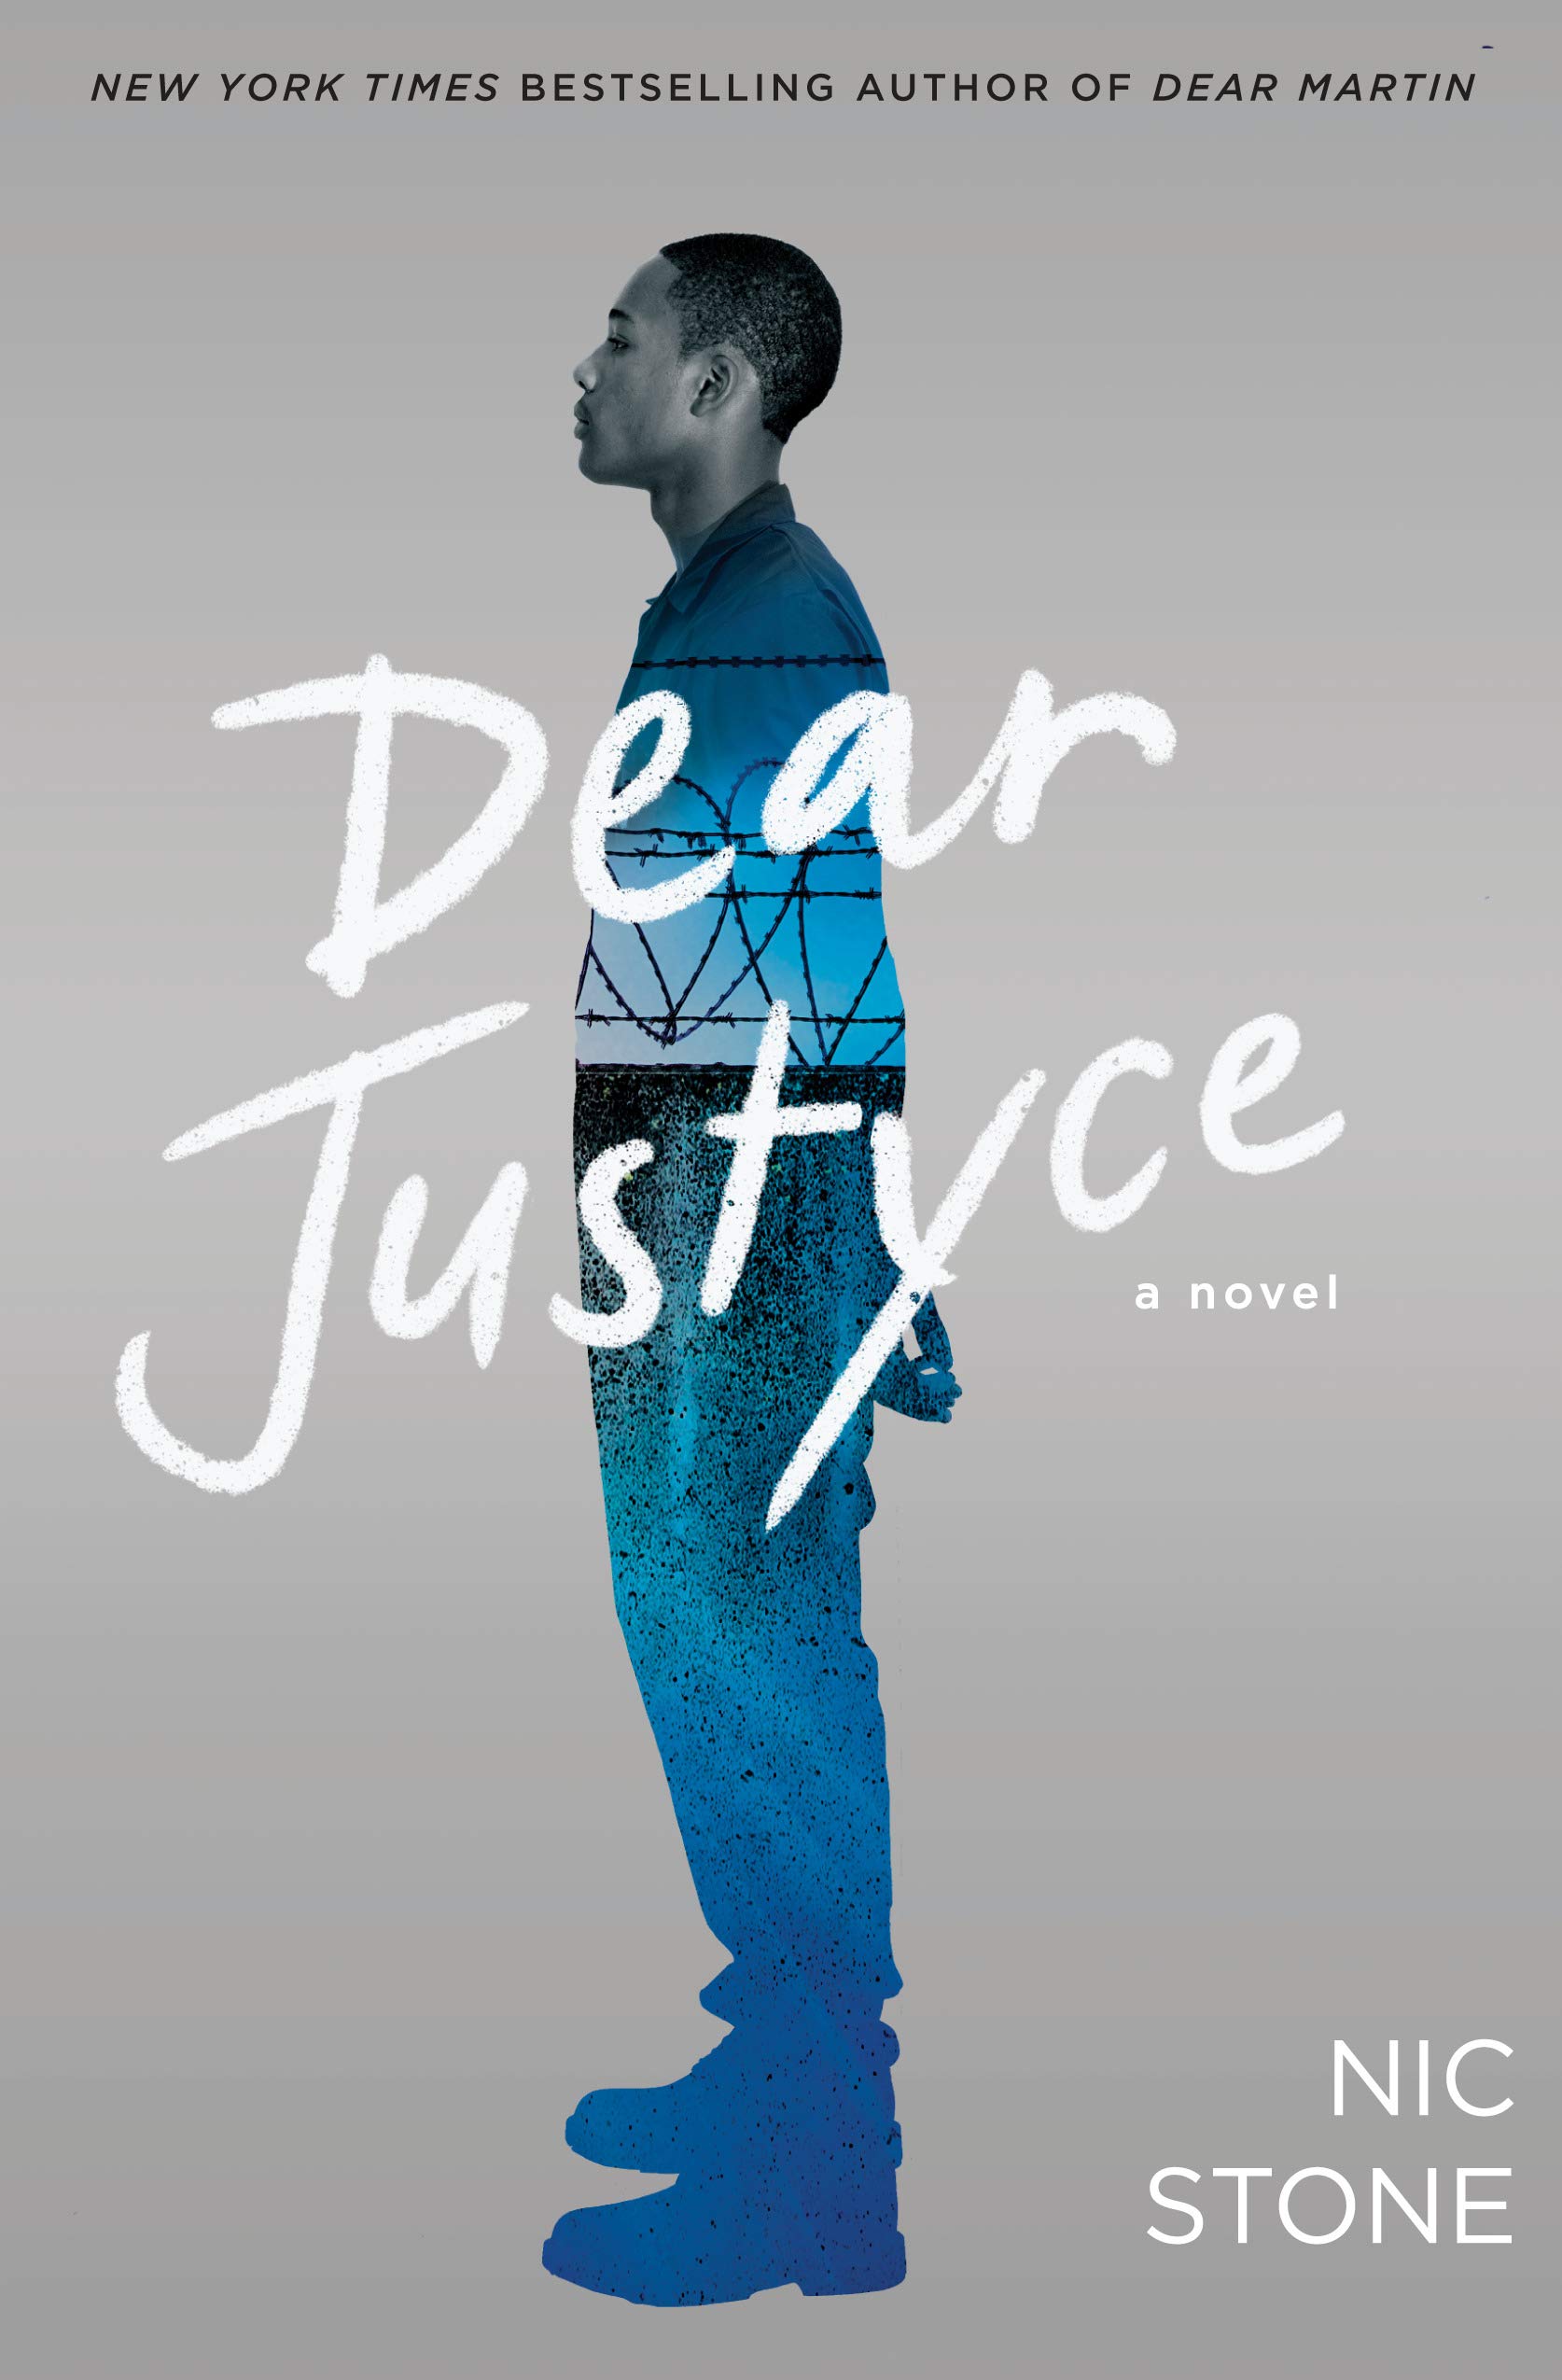 [EPUB] Dear Martin #2 Dear Justyce by Nic Stone